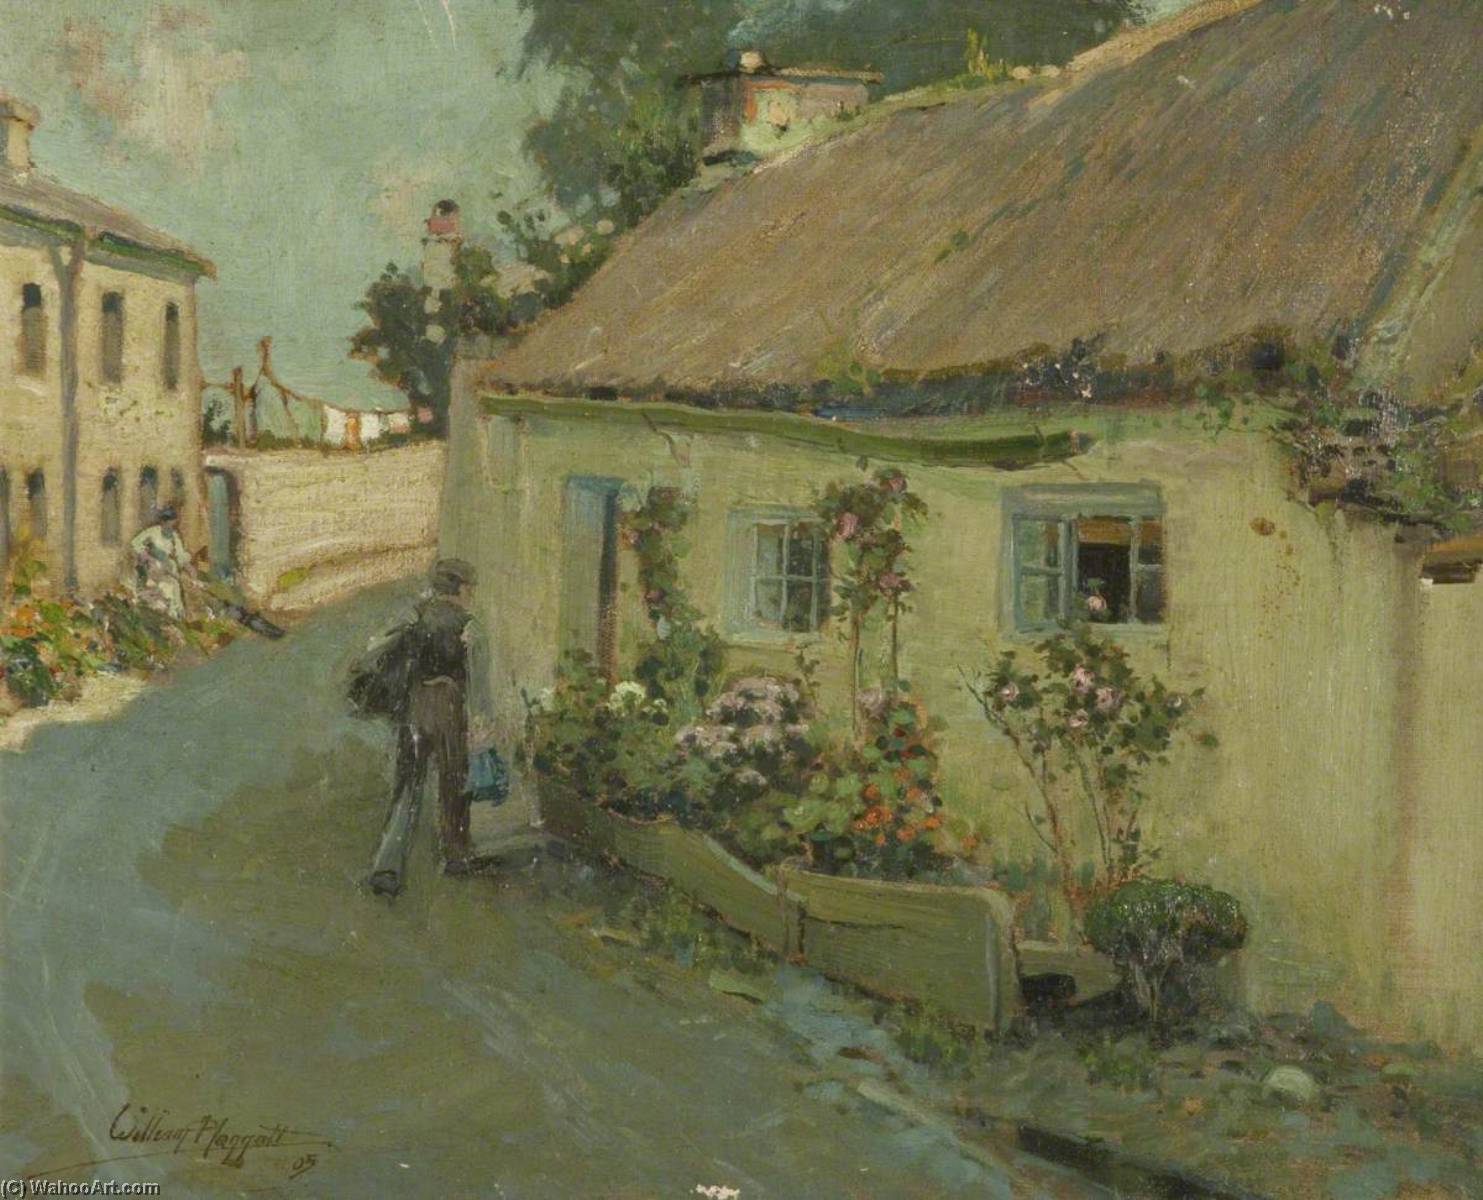 WikiOO.org - אנציקלופדיה לאמנויות יפות - ציור, יצירות אמנות William Hoggatt - Thatched Cottage